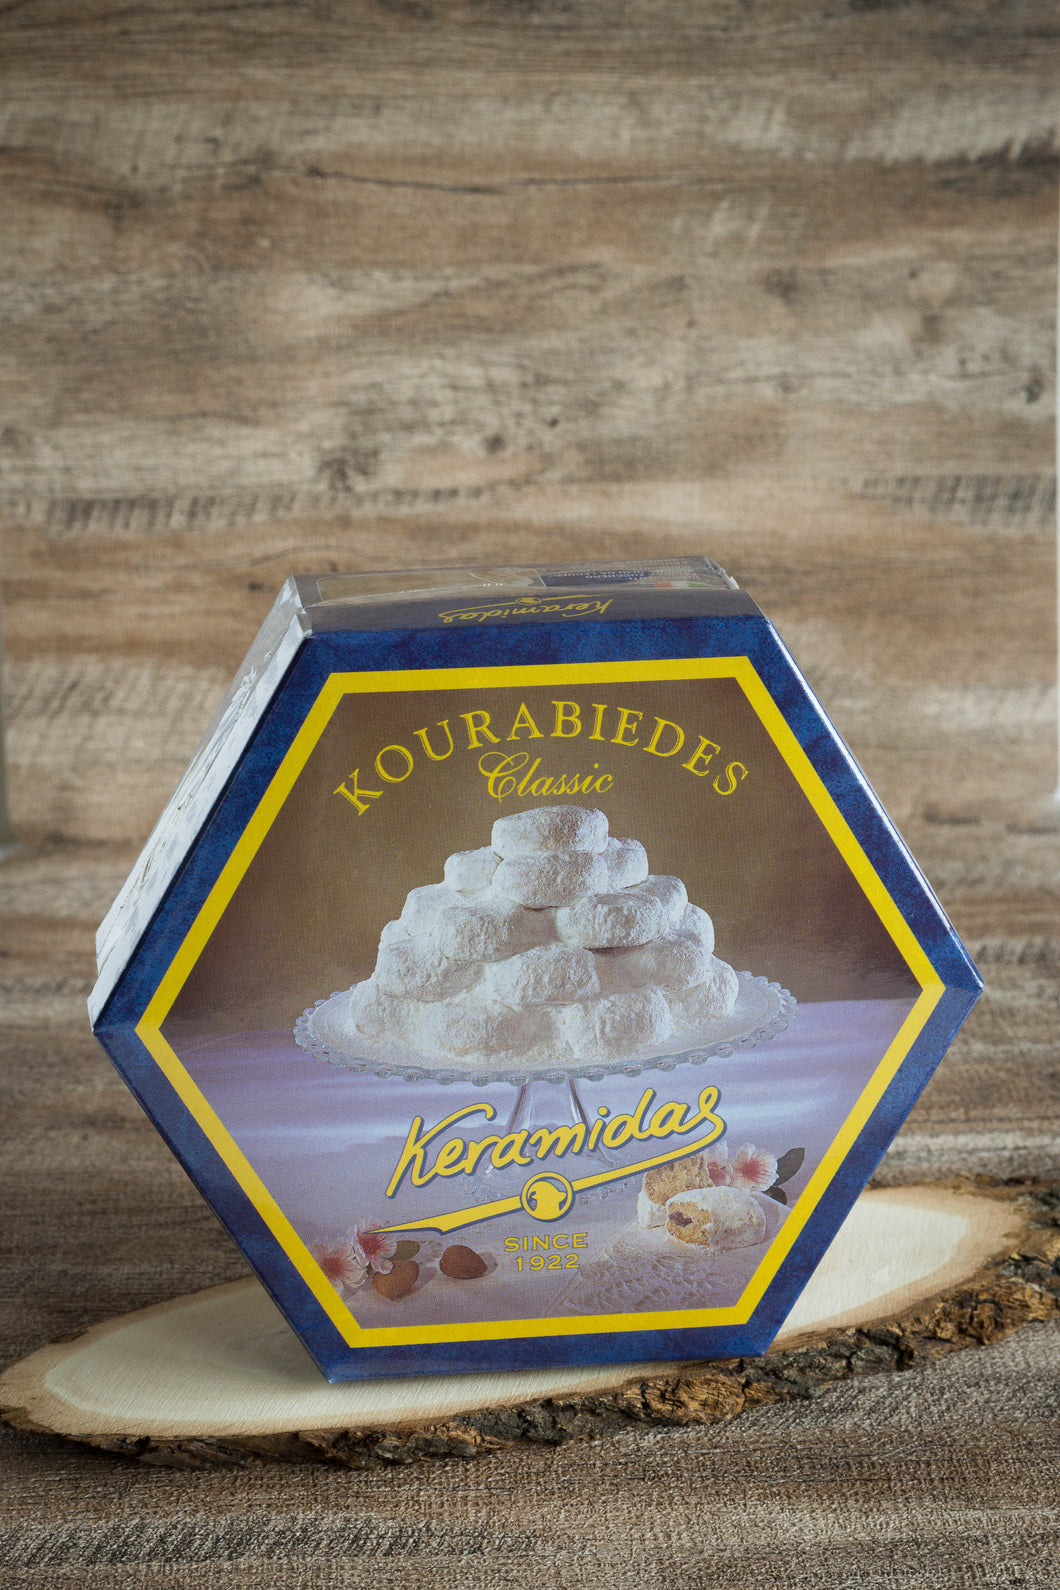 KERAMIDAS - Kourabiedes (sablé aux amandes) (420g) - Les produits du soleil